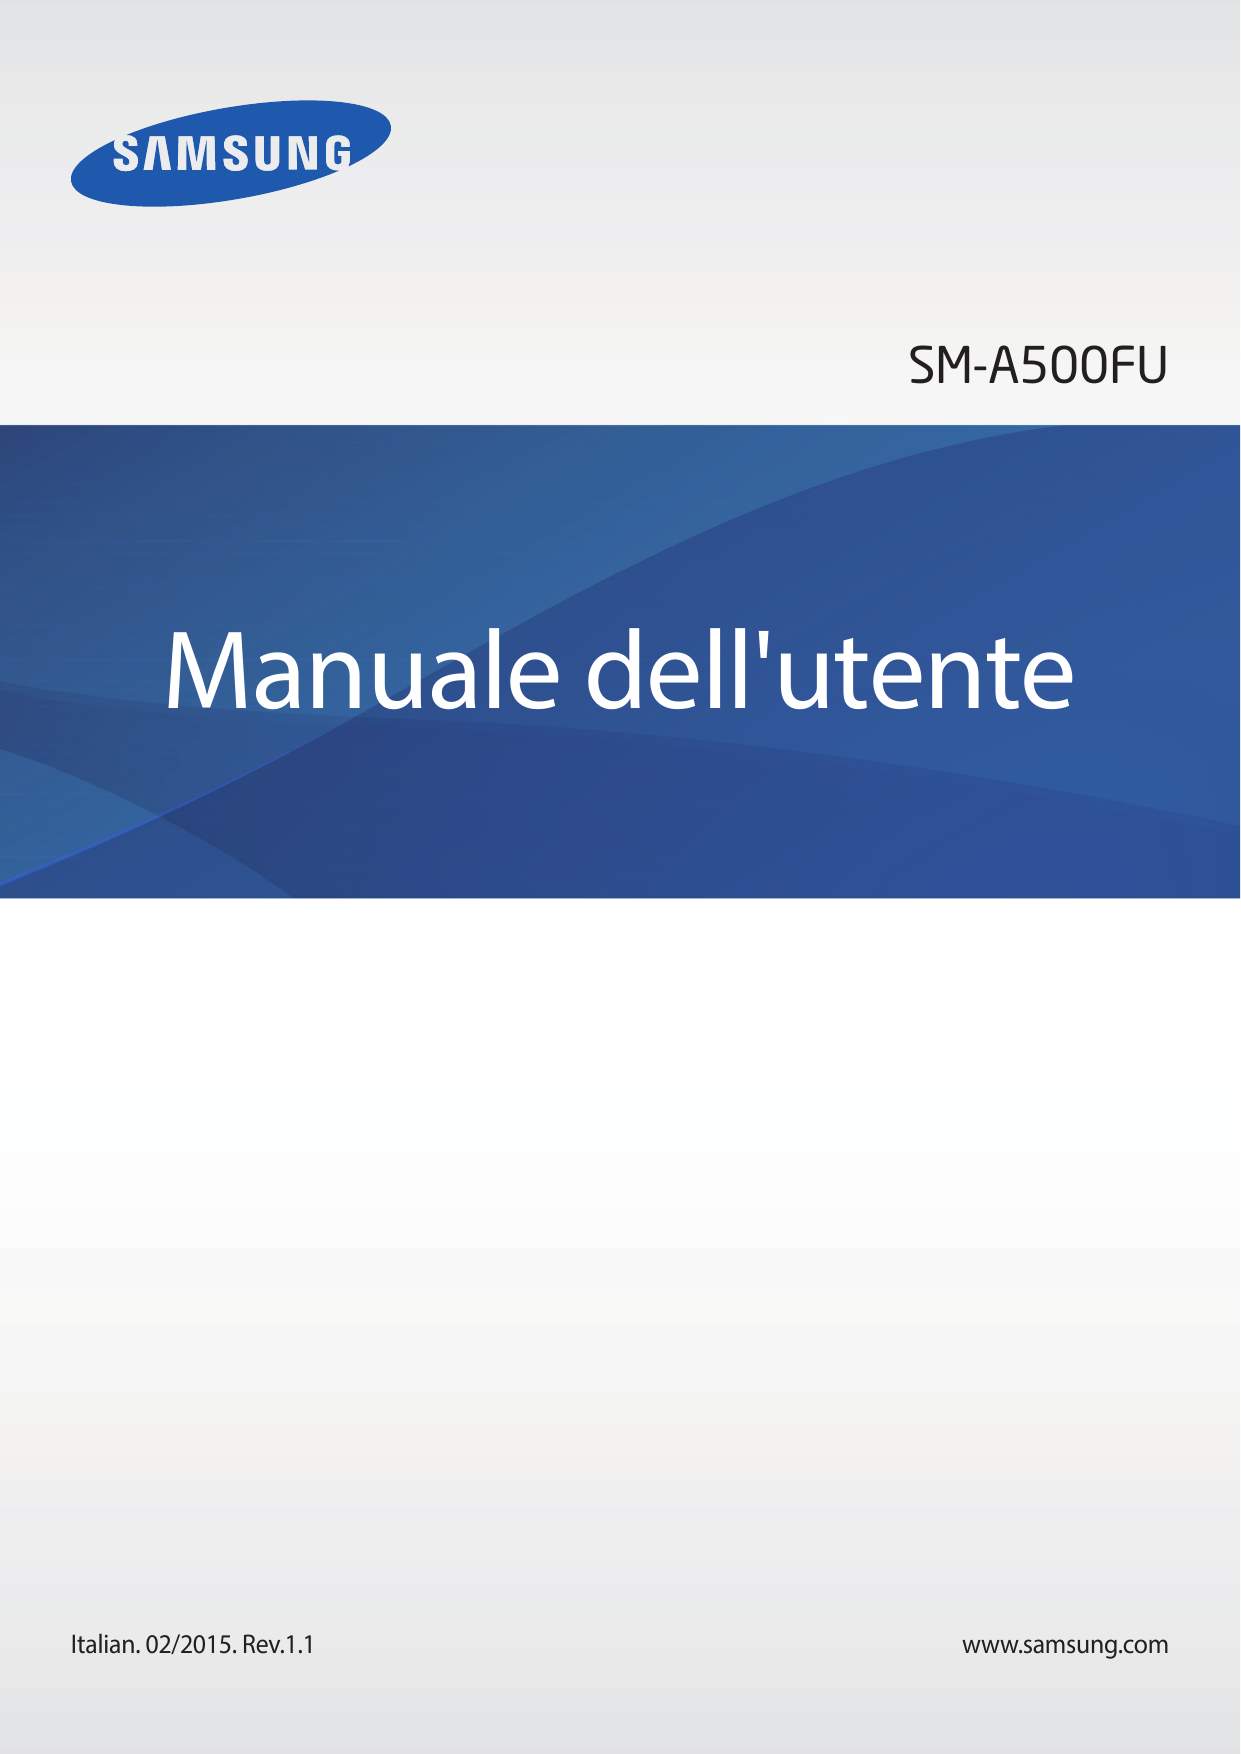 SM-A500FUManuale dell'utenteItalian. 02/2015. Rev.1.1www.samsung.com